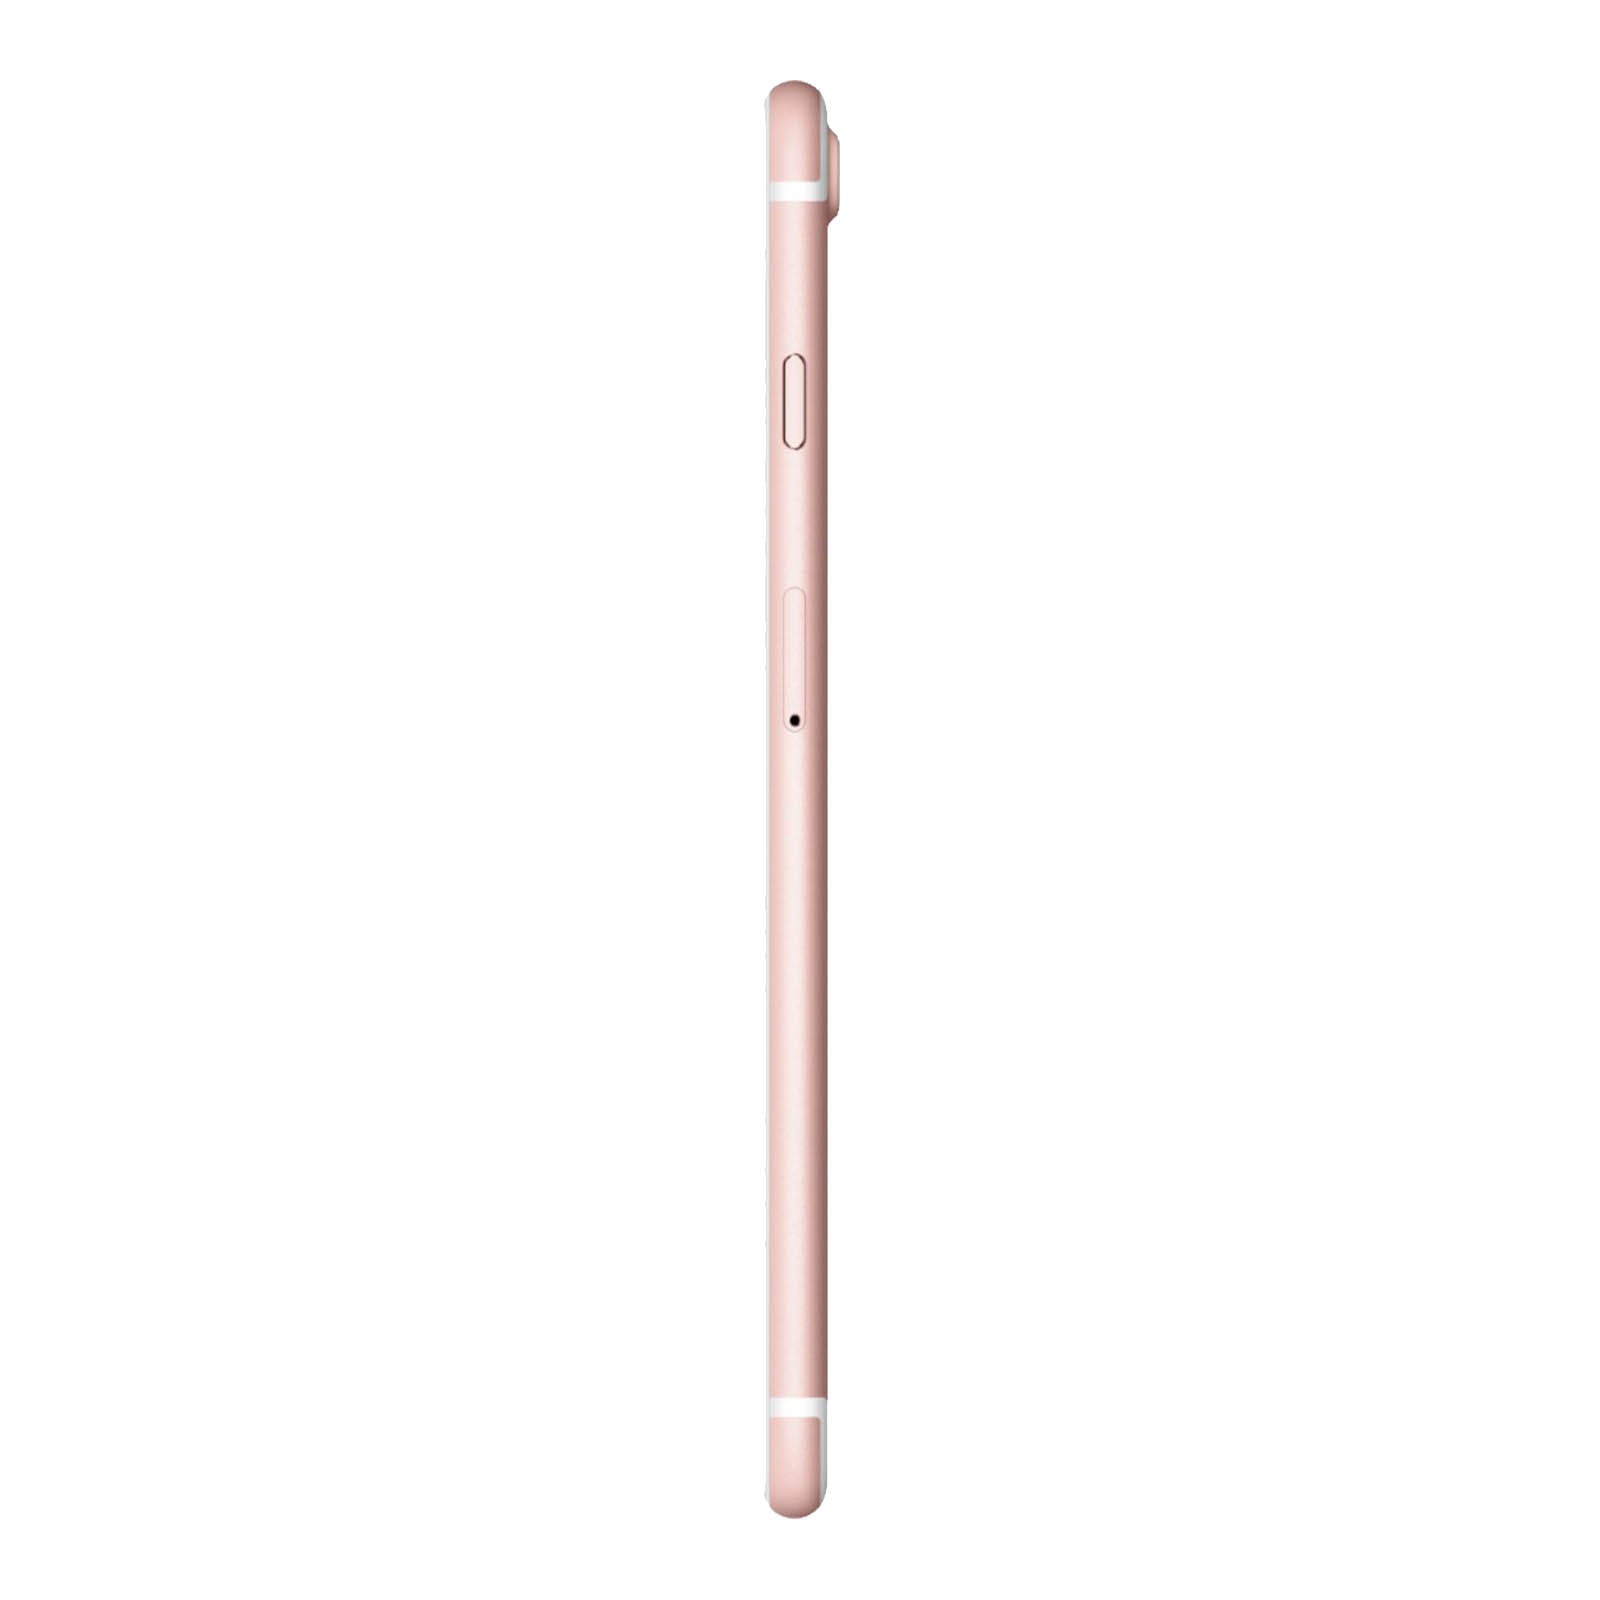 Apple iPhone 7 256GB Oro Rosa Discreto Sbloccato